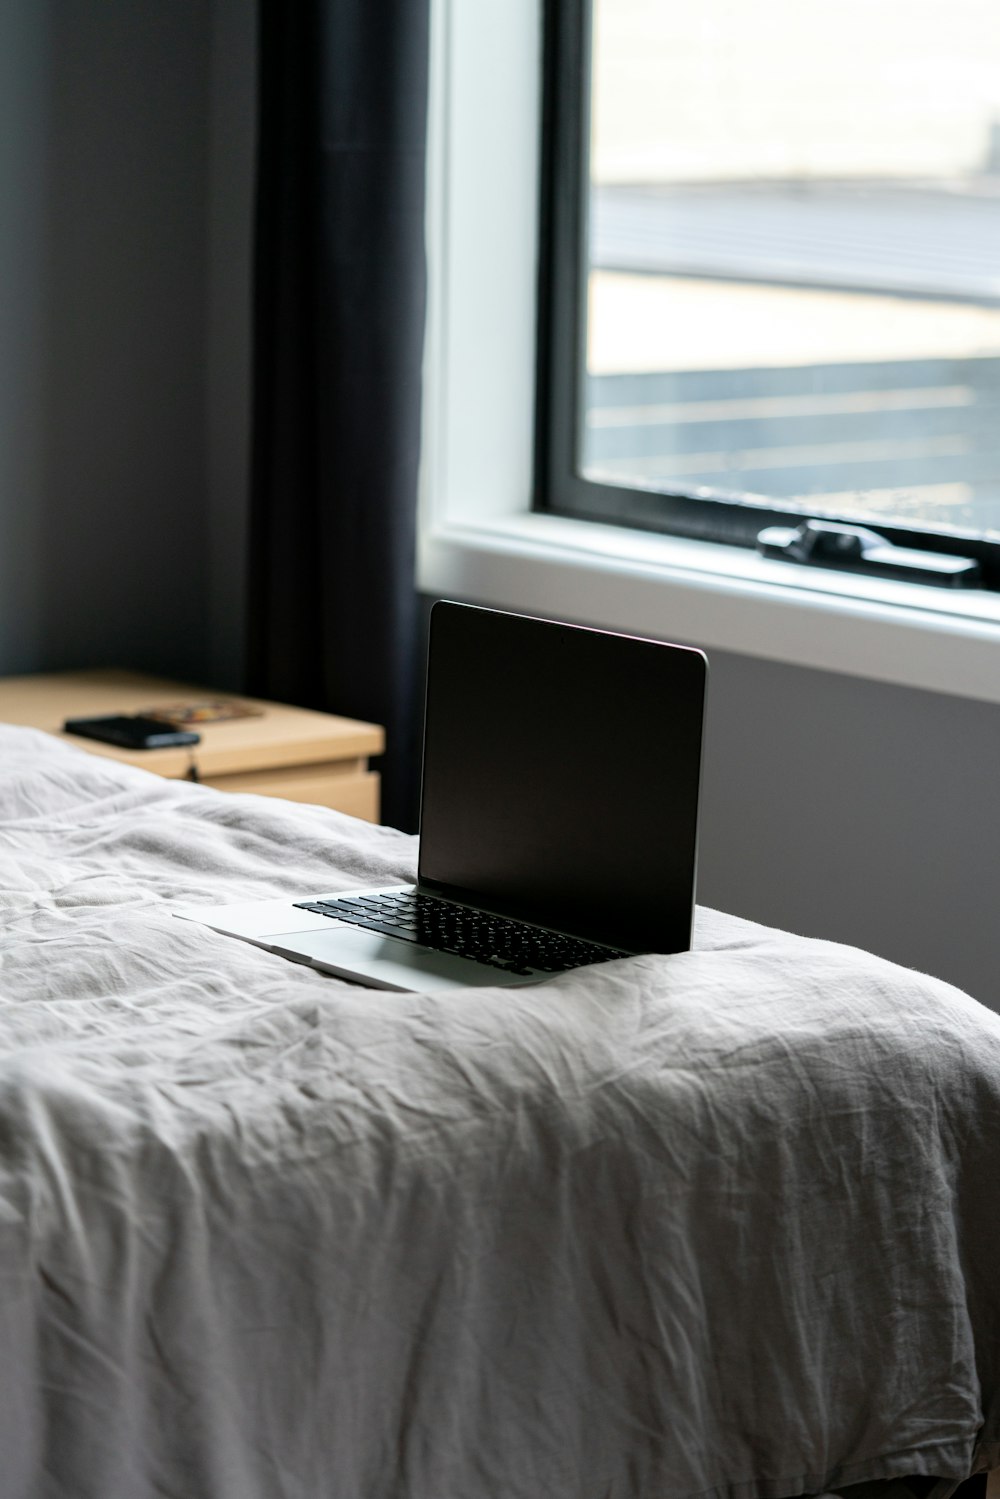 macbook pro on bed near window